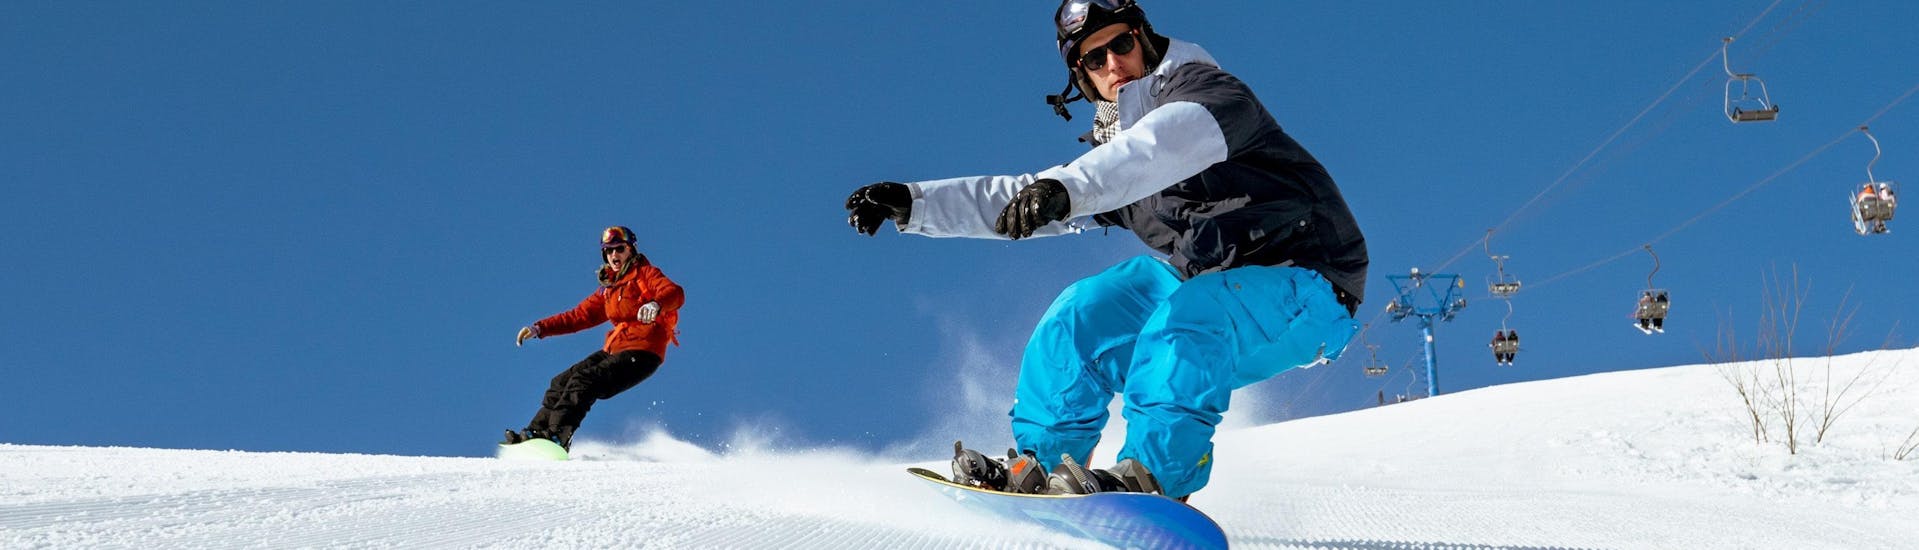 Un maestro di snowboard sta aiutando un signore a migliorare la sua tecnica, le lezioni private di snowboard per bambini e adulti - tutti i livelli  della Scuola di Scia Abetone gli permettono di essere seguito individualmente.